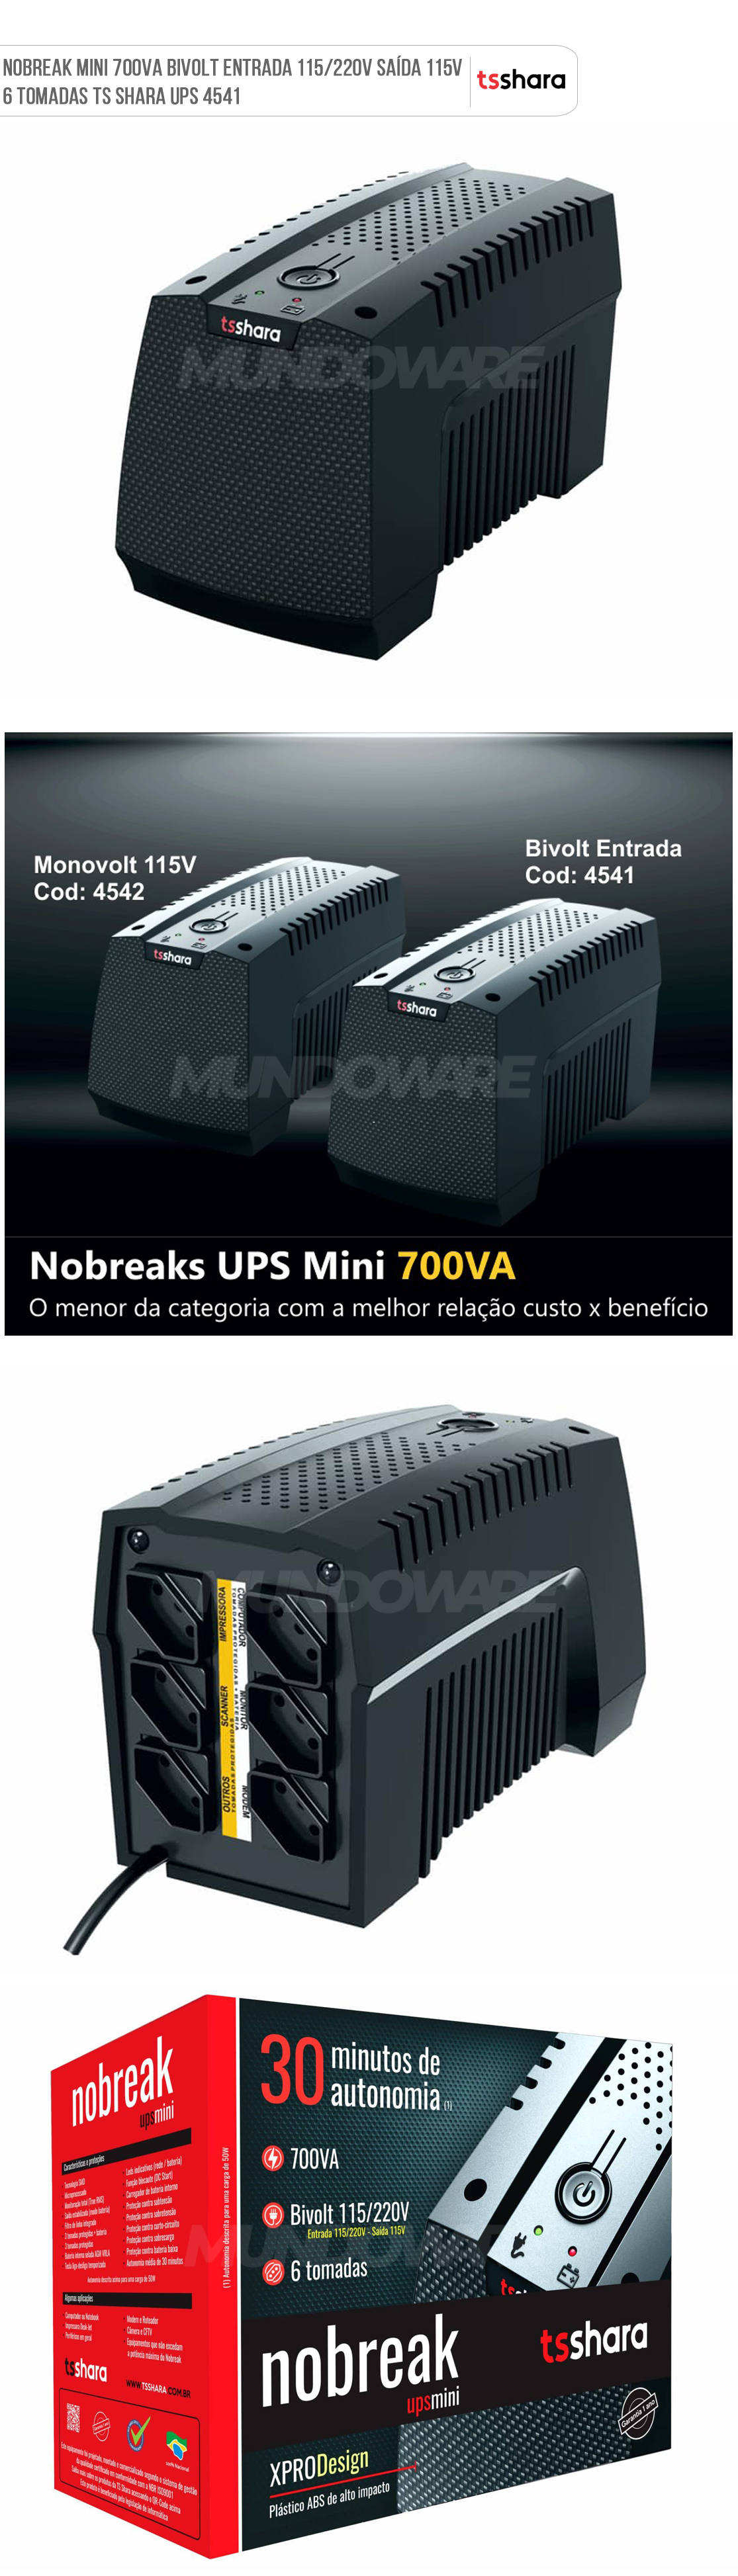 Nobreak Mini 700VA 455W PWM Entrada 115/220V Sada 115V TS Shara UPS XPro 4541